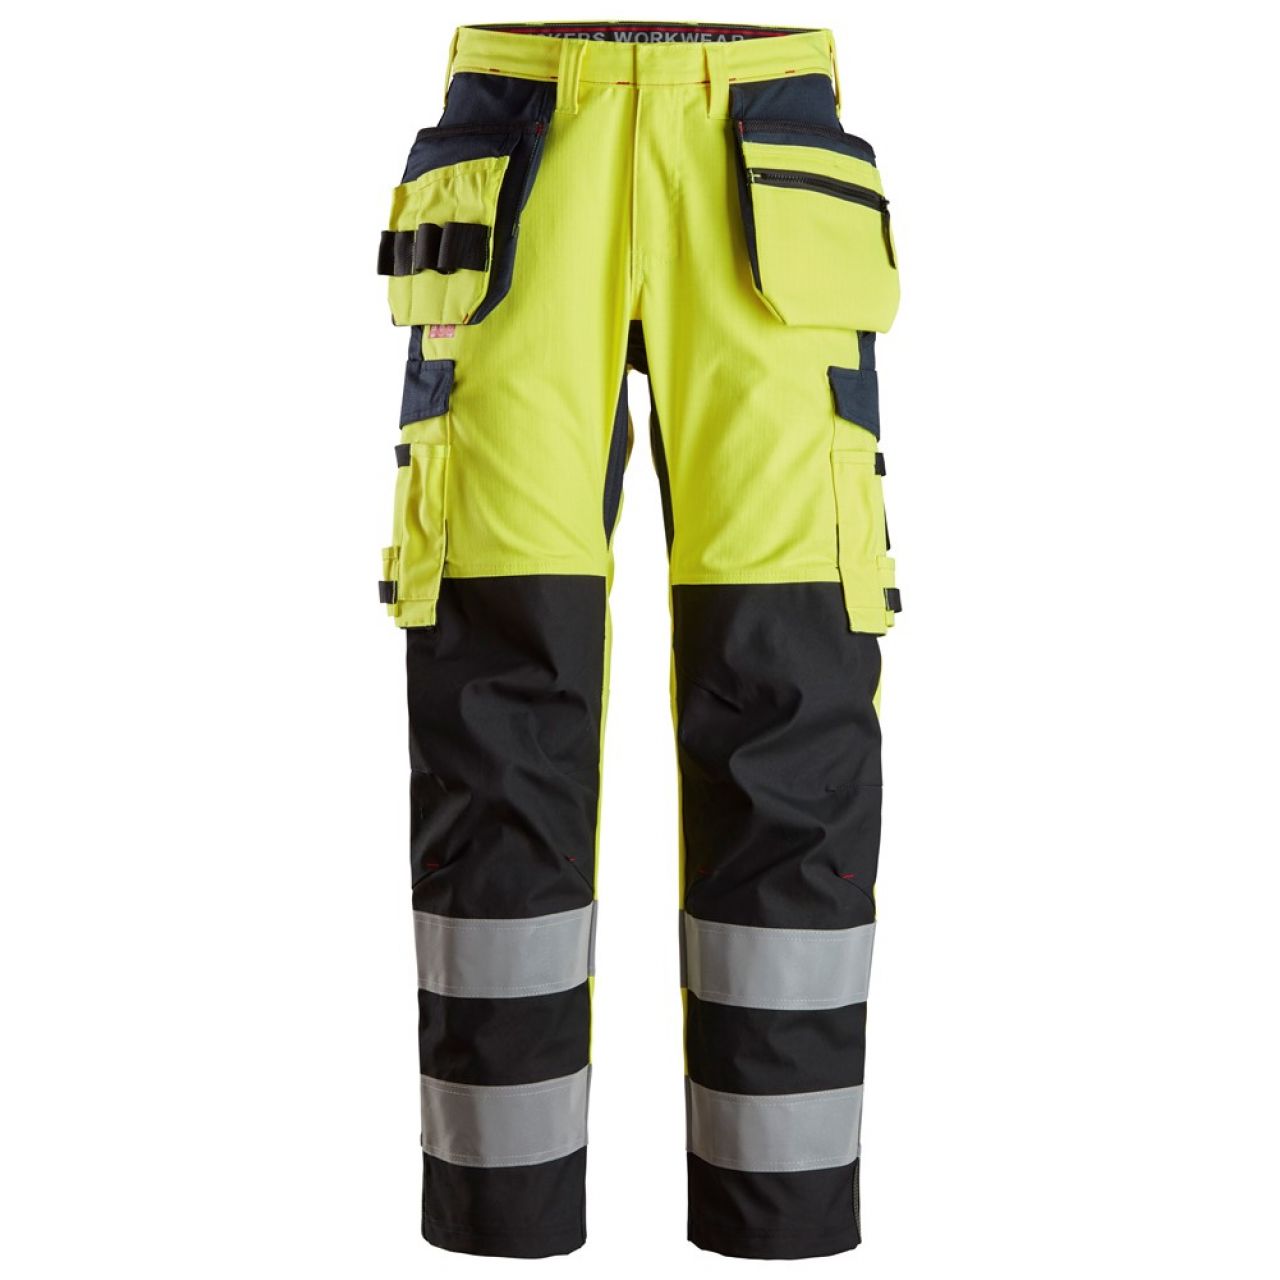 6264 Pantalones largos de trabajo de alta visibilidad clase 2 con bolsillos flotantes y espinilla reforzada ProtecWork amarillo-azul marino talla 146